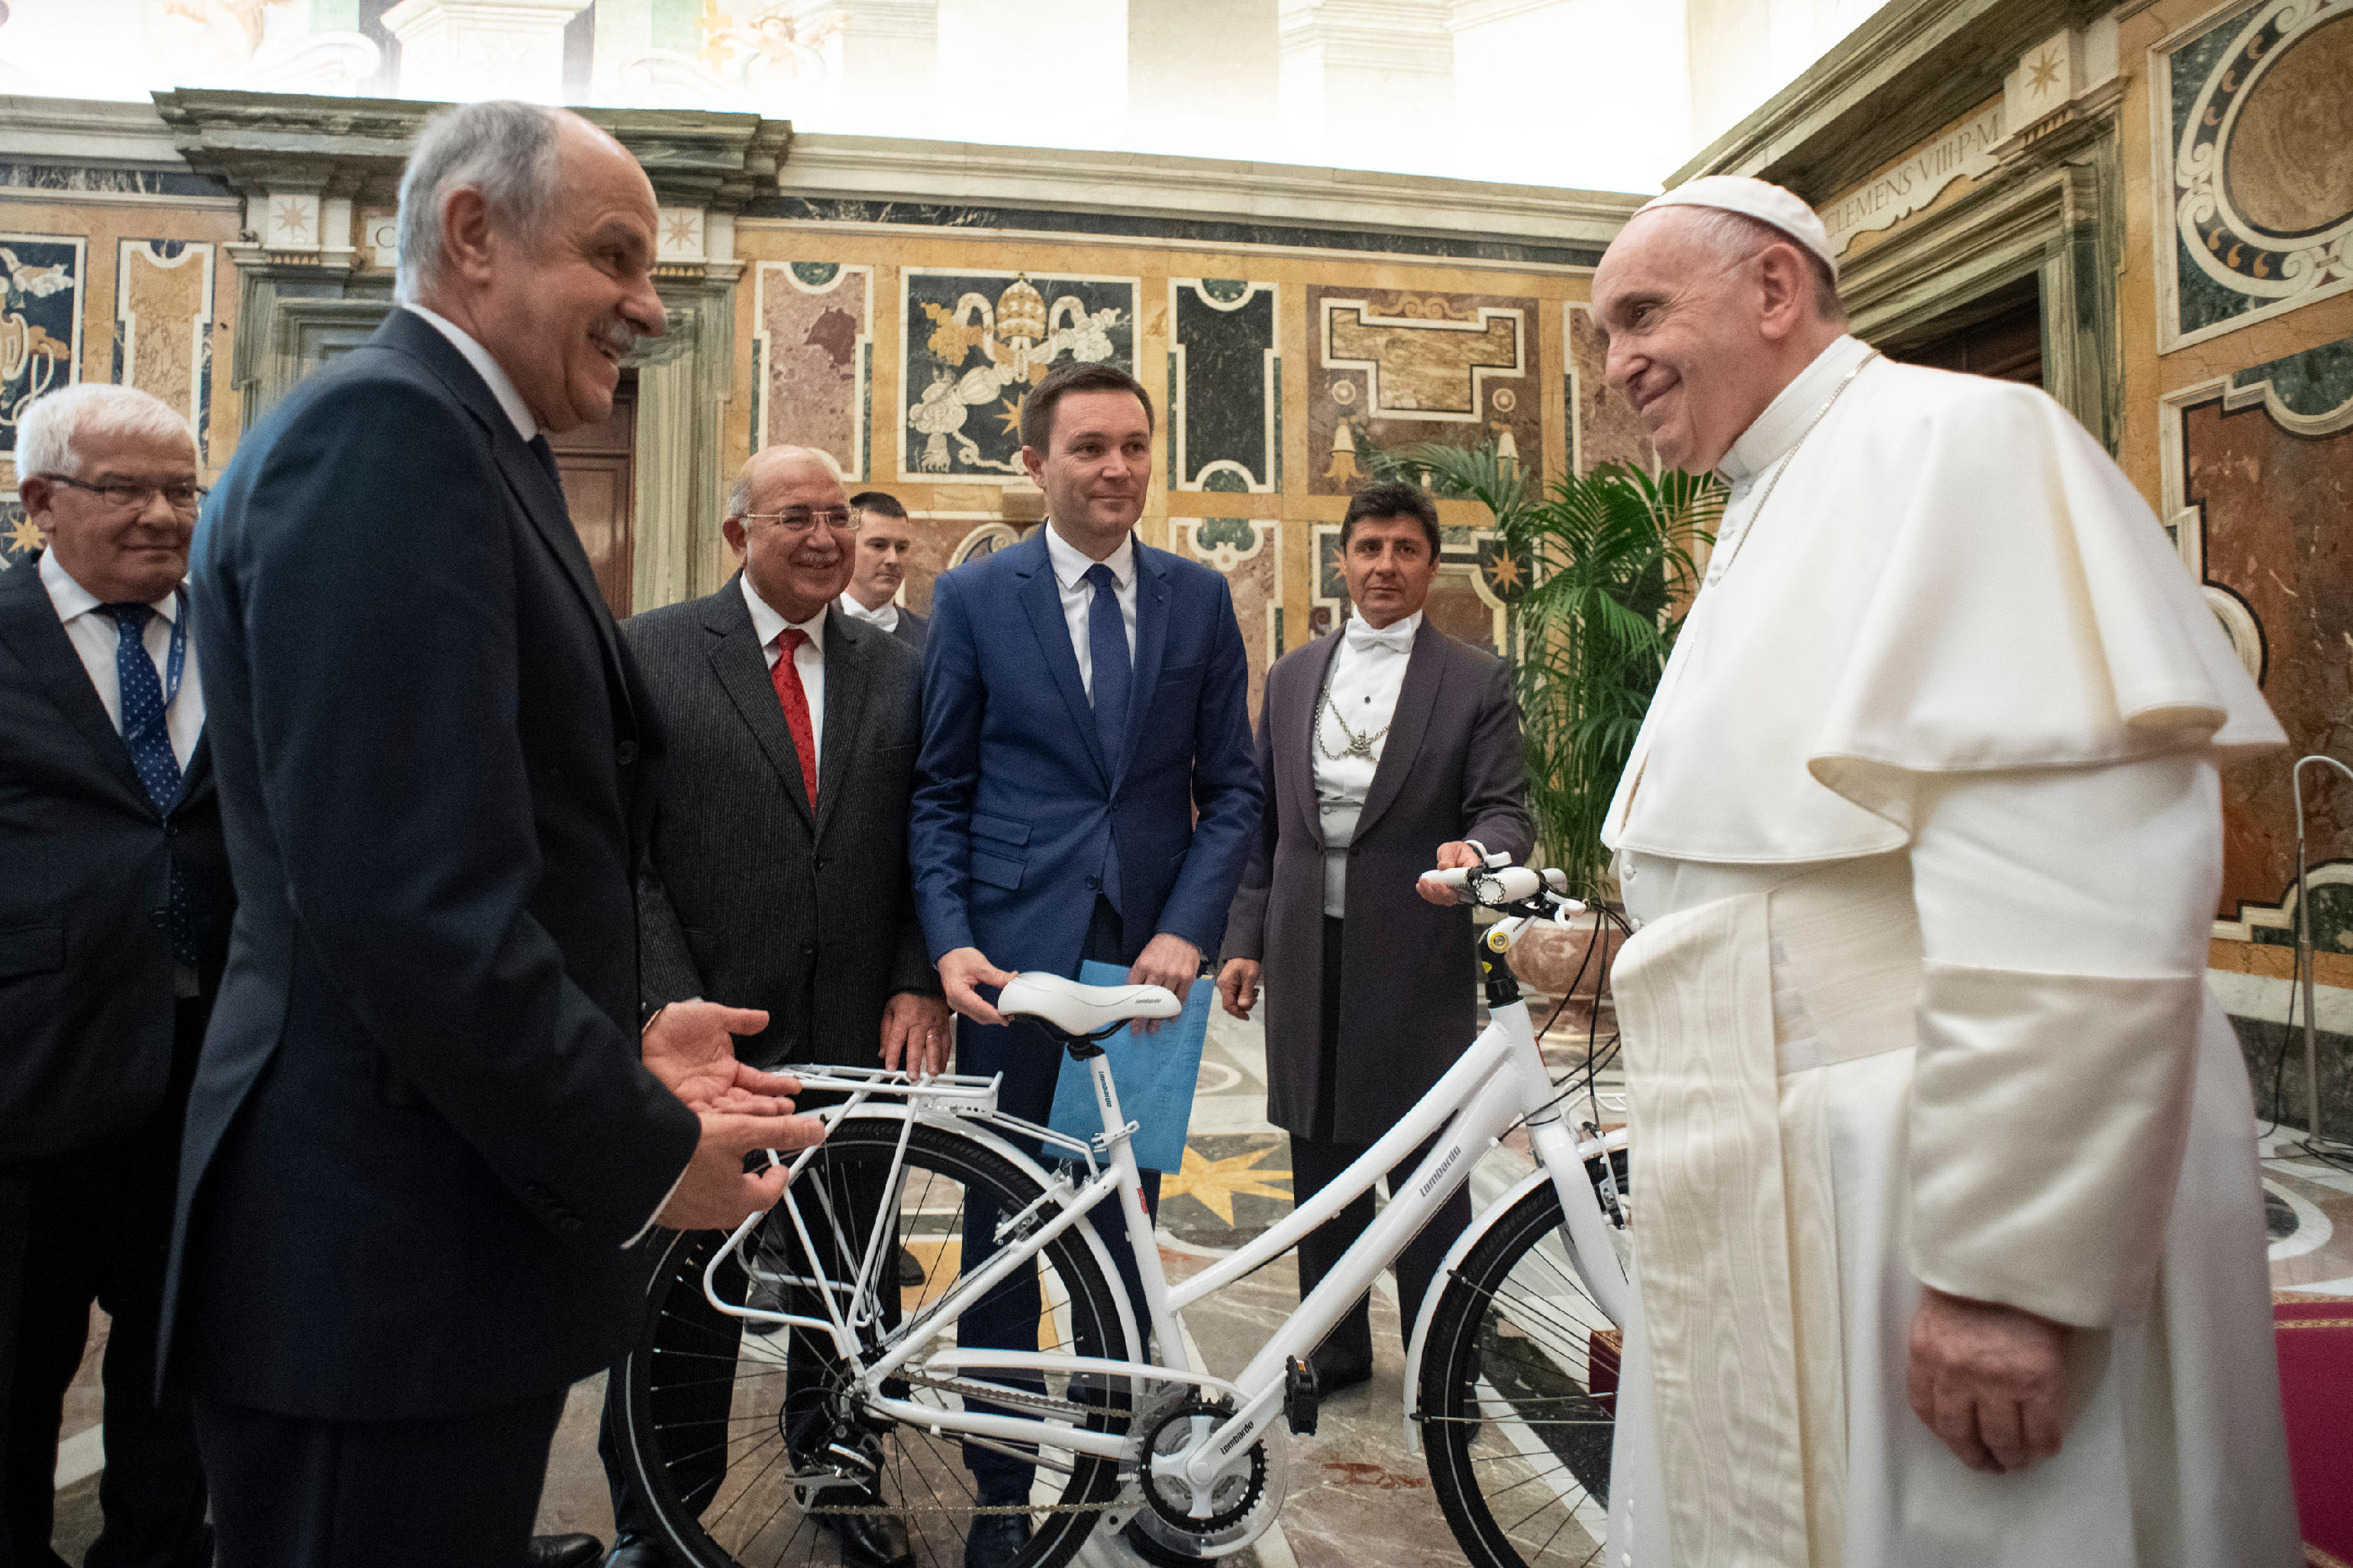 Cyclisme : hommage du pape au courage, à l’altruisme des athlètes SFO4010